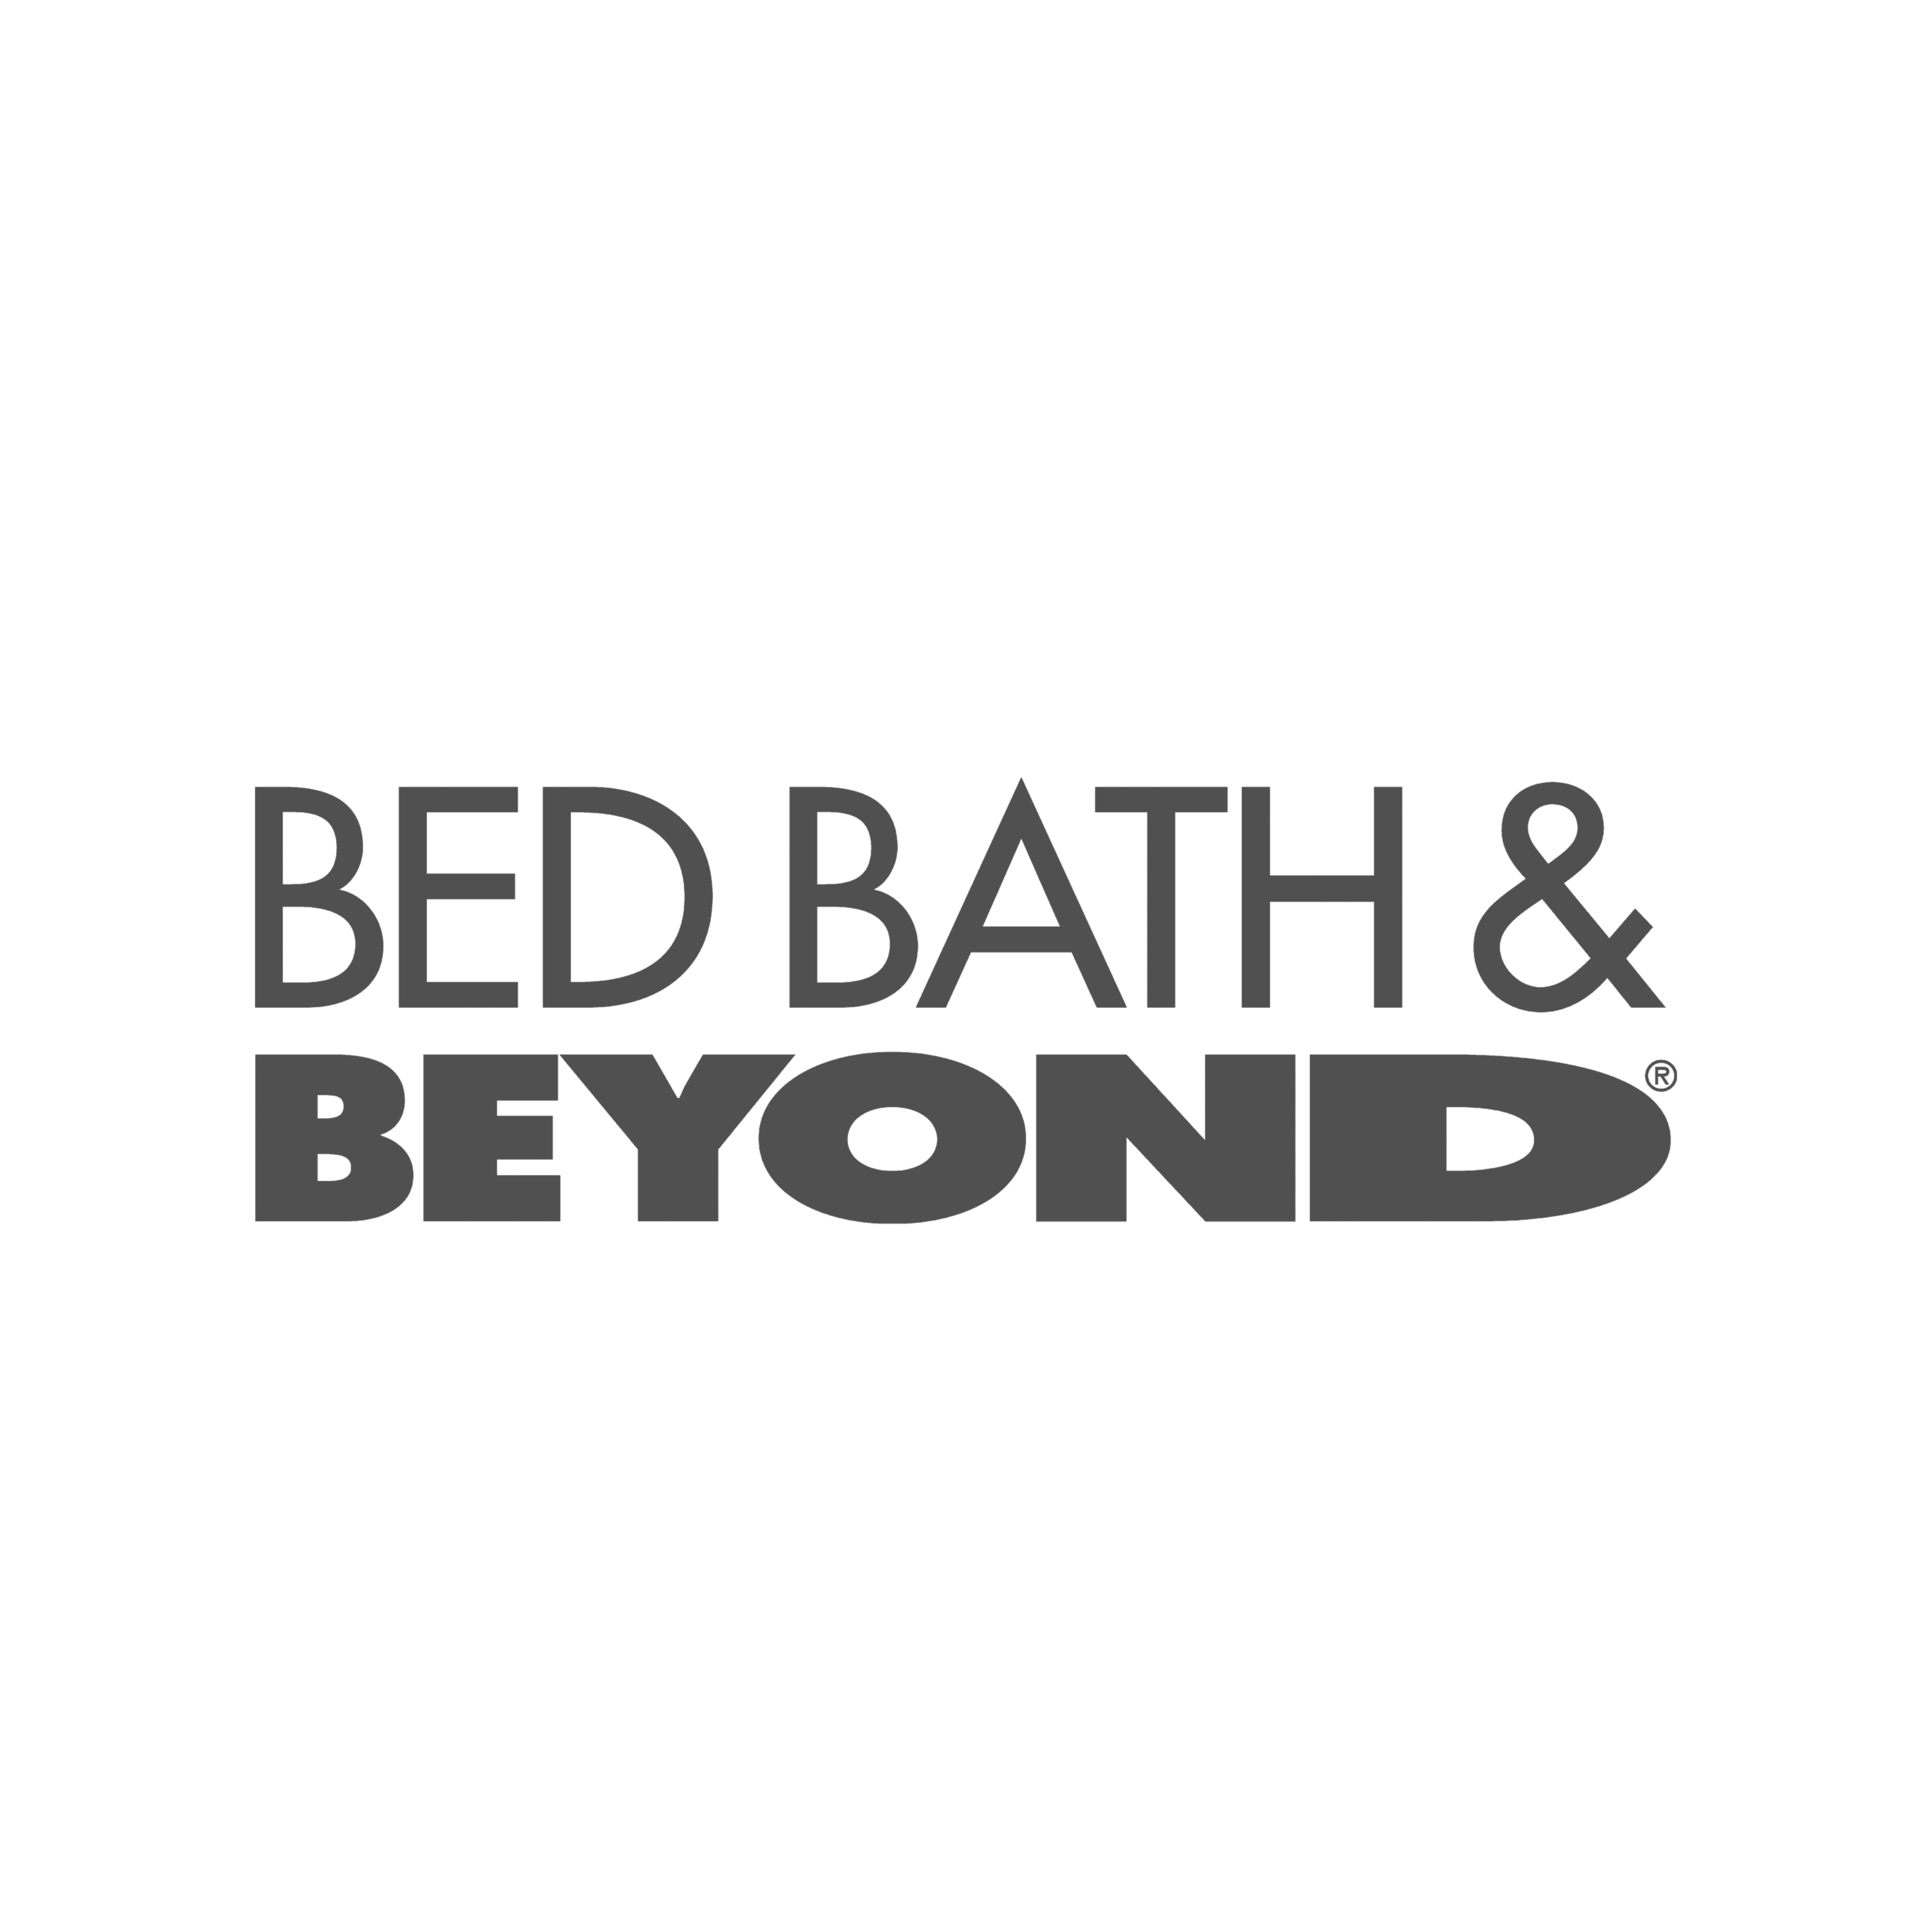 A bed bath & beyond logo